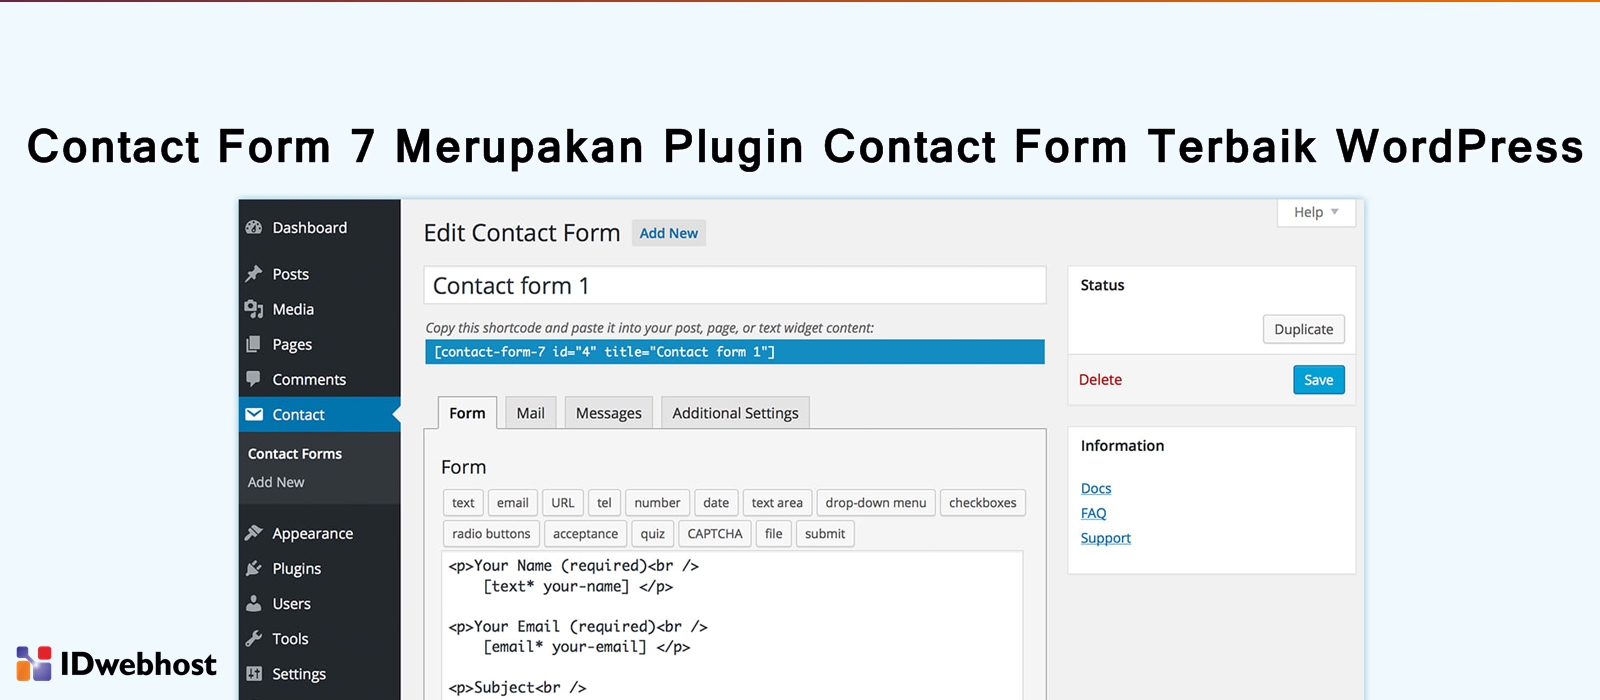 Contact Form 7 Merupakan Plugin Contact Form Terbaik WordPress